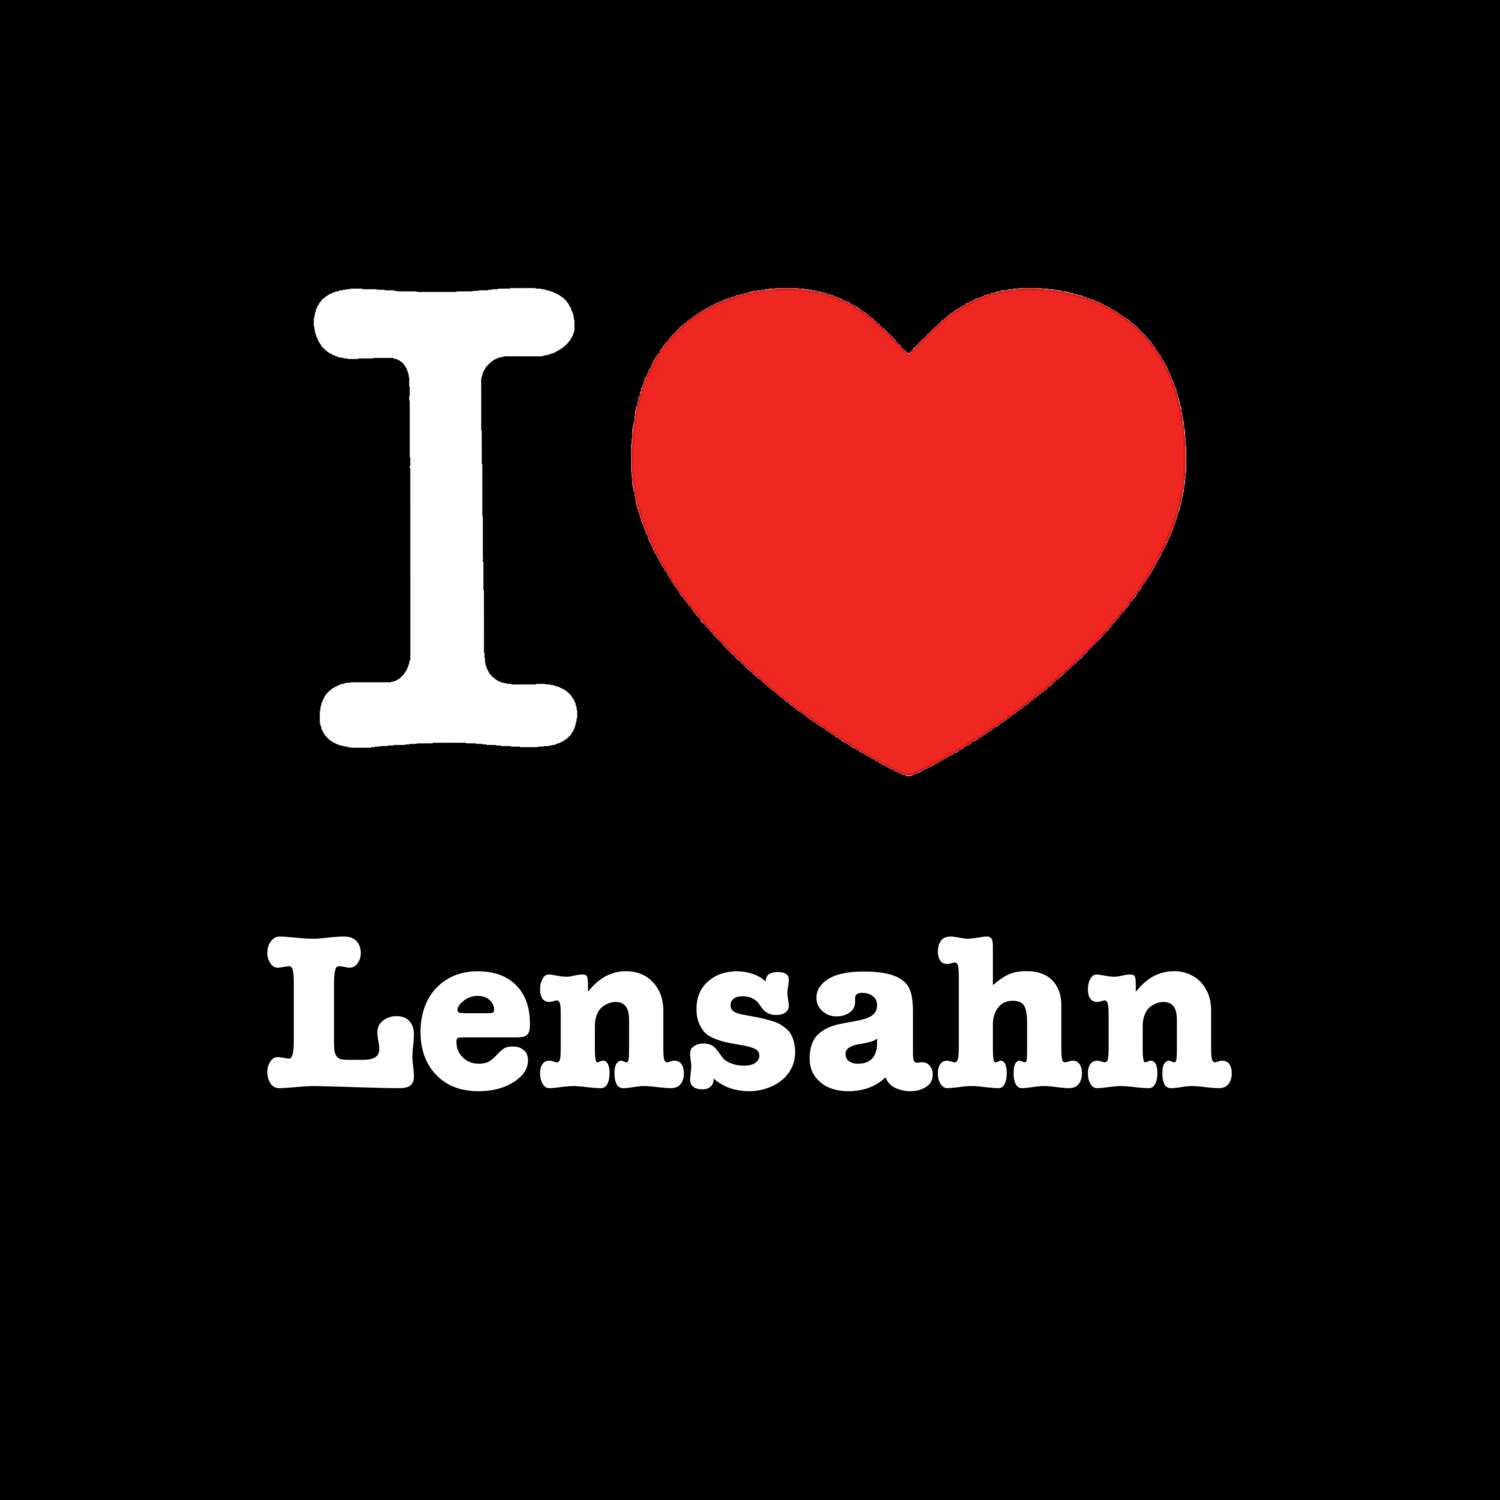 Lensahn T-Shirt »I love«